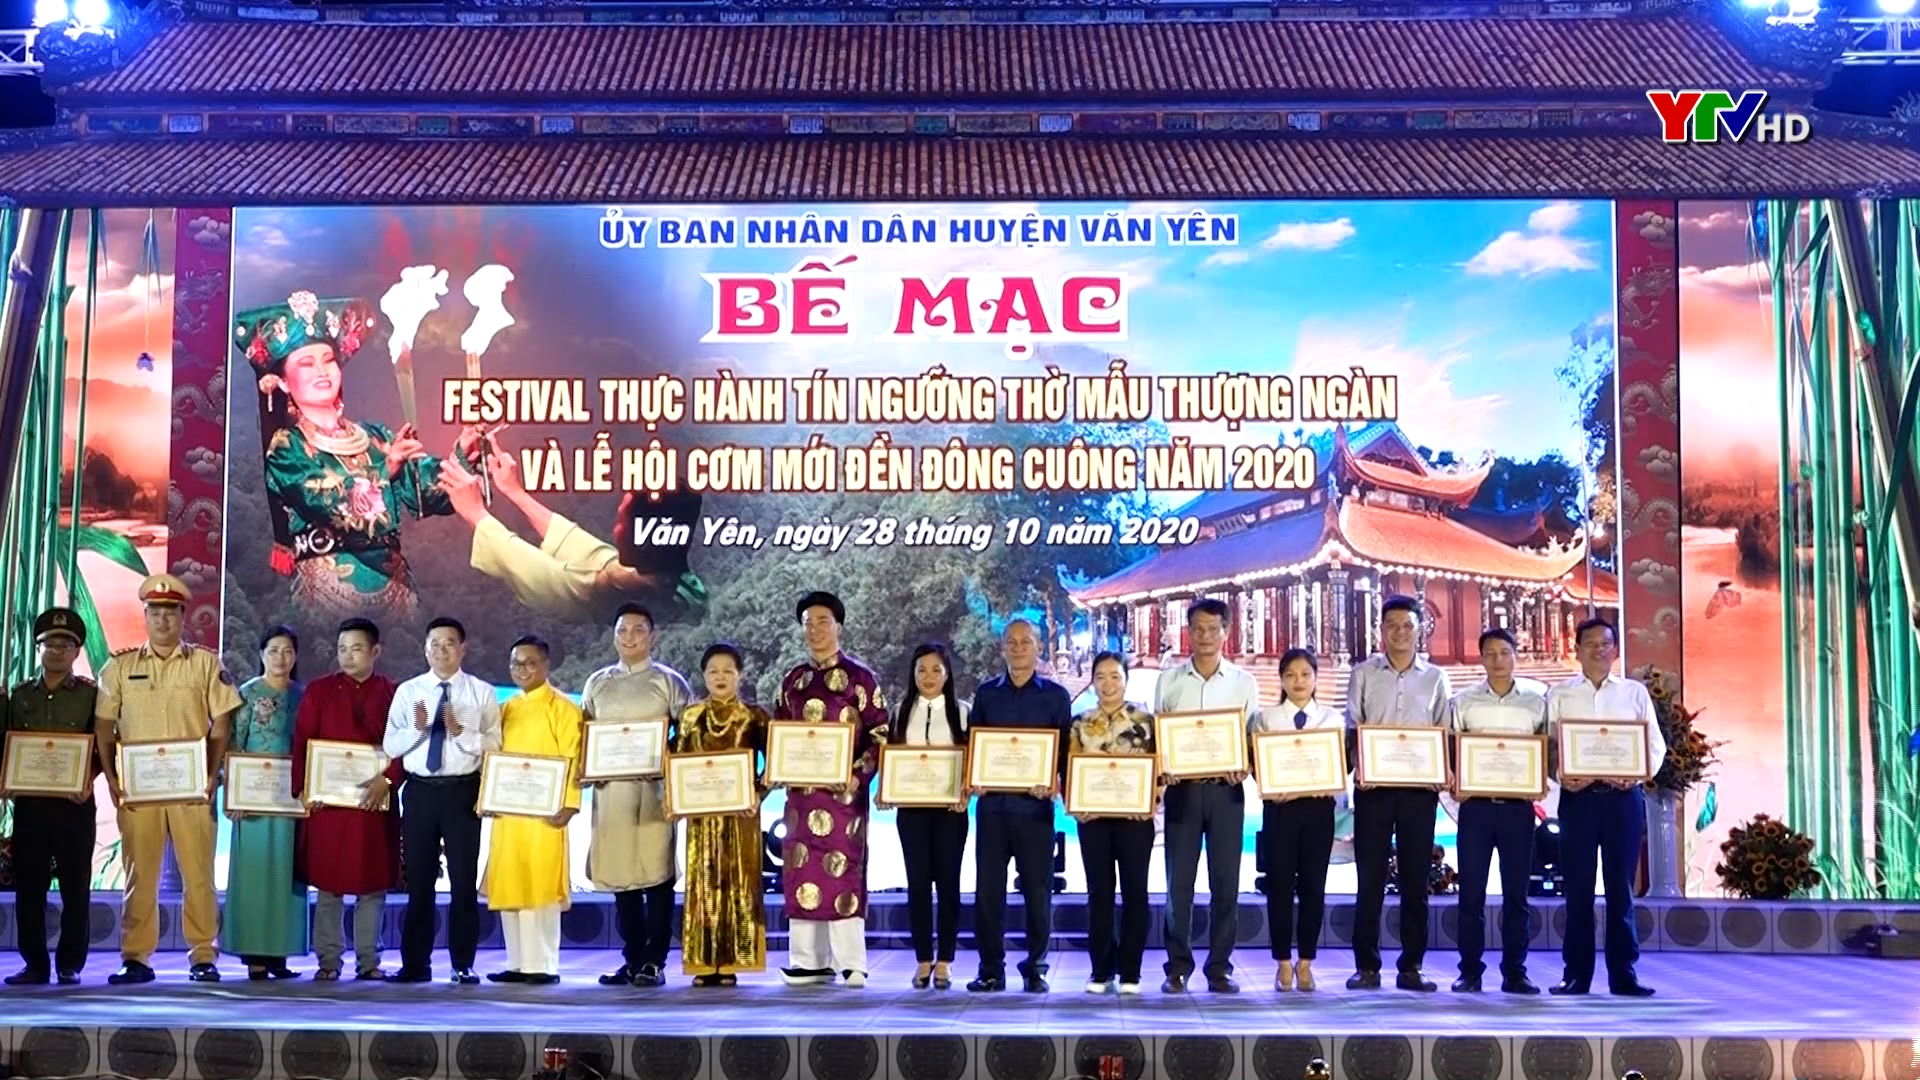 Bế mạc Festival thực hành tín ngưỡng thờ Mẫu Thượng Ngàn và Lễ hội cơm mới đền Đông Cuông năm 2020